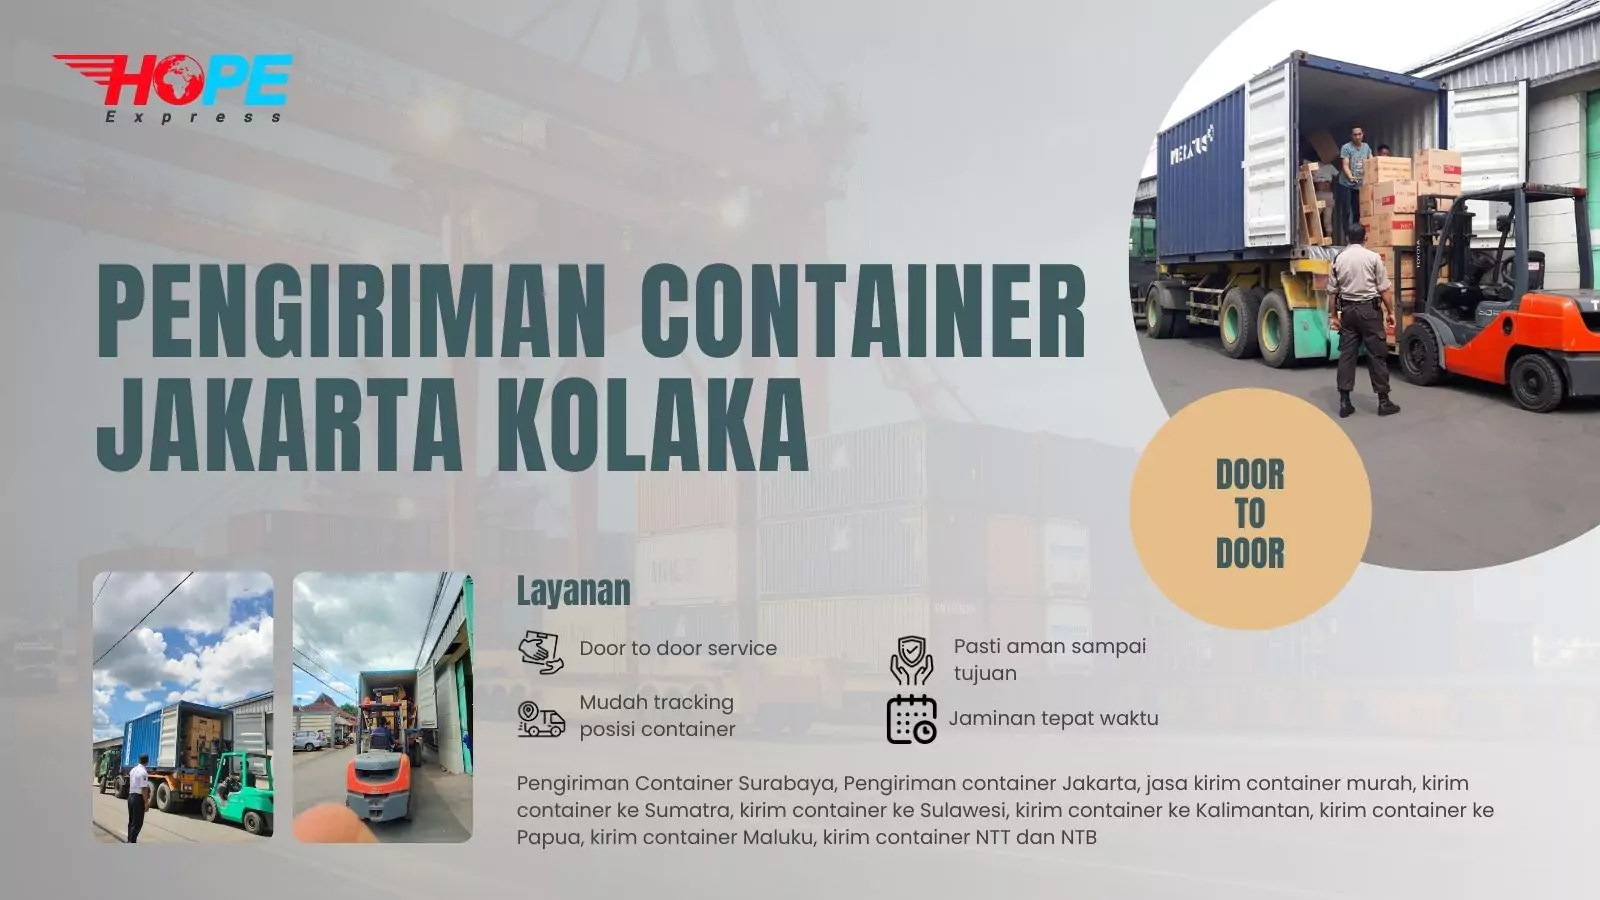 Pengiriman Container Jakarta Kolaka